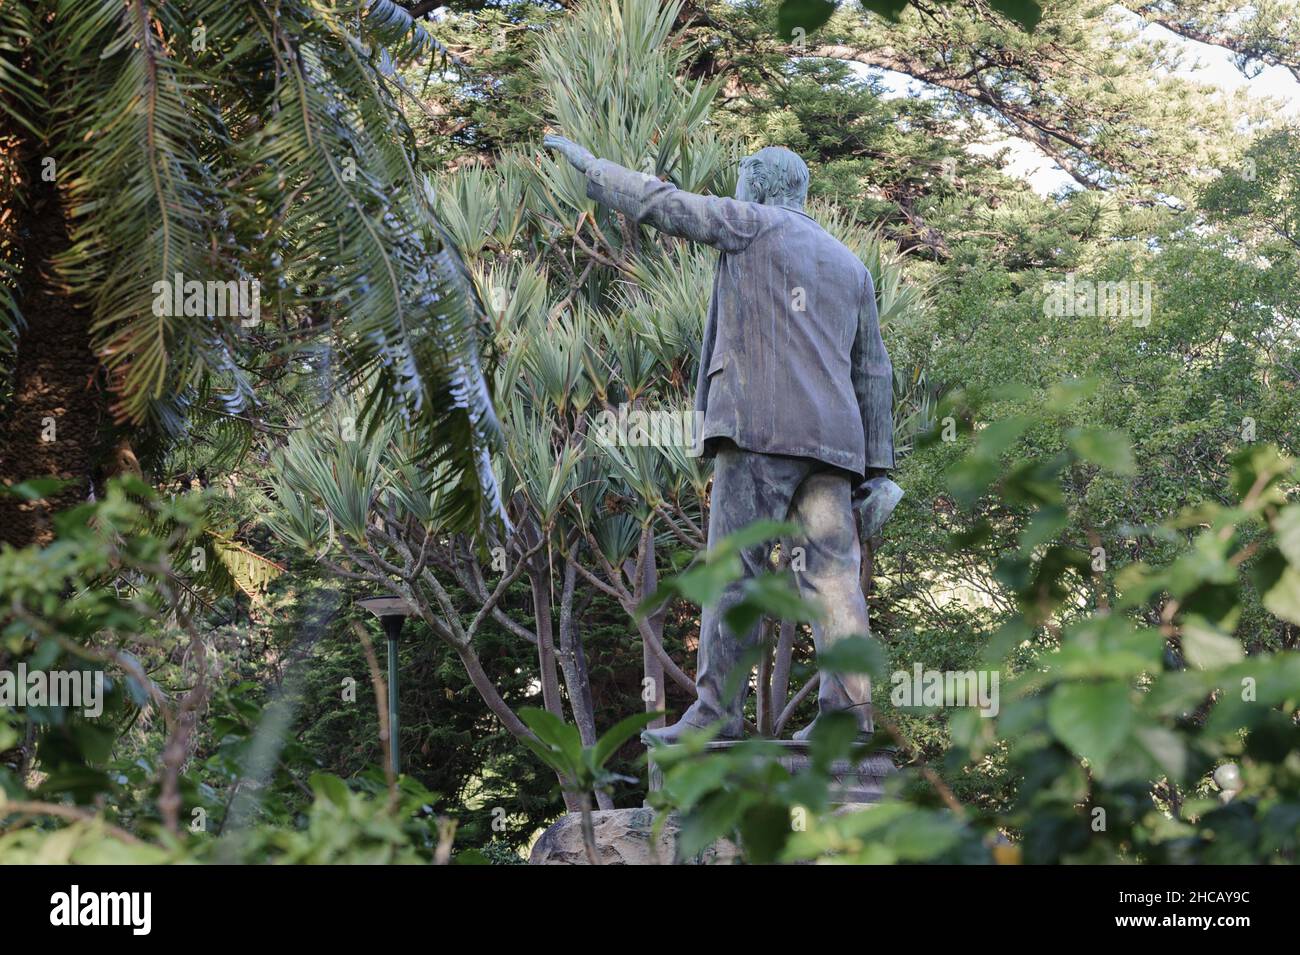 La statue du baron robber Cecil John Rhodes dans le jardin de la Compagnie du Cap reste en Afrique du Sud après l'apartheid, malgré ses controverses Banque D'Images